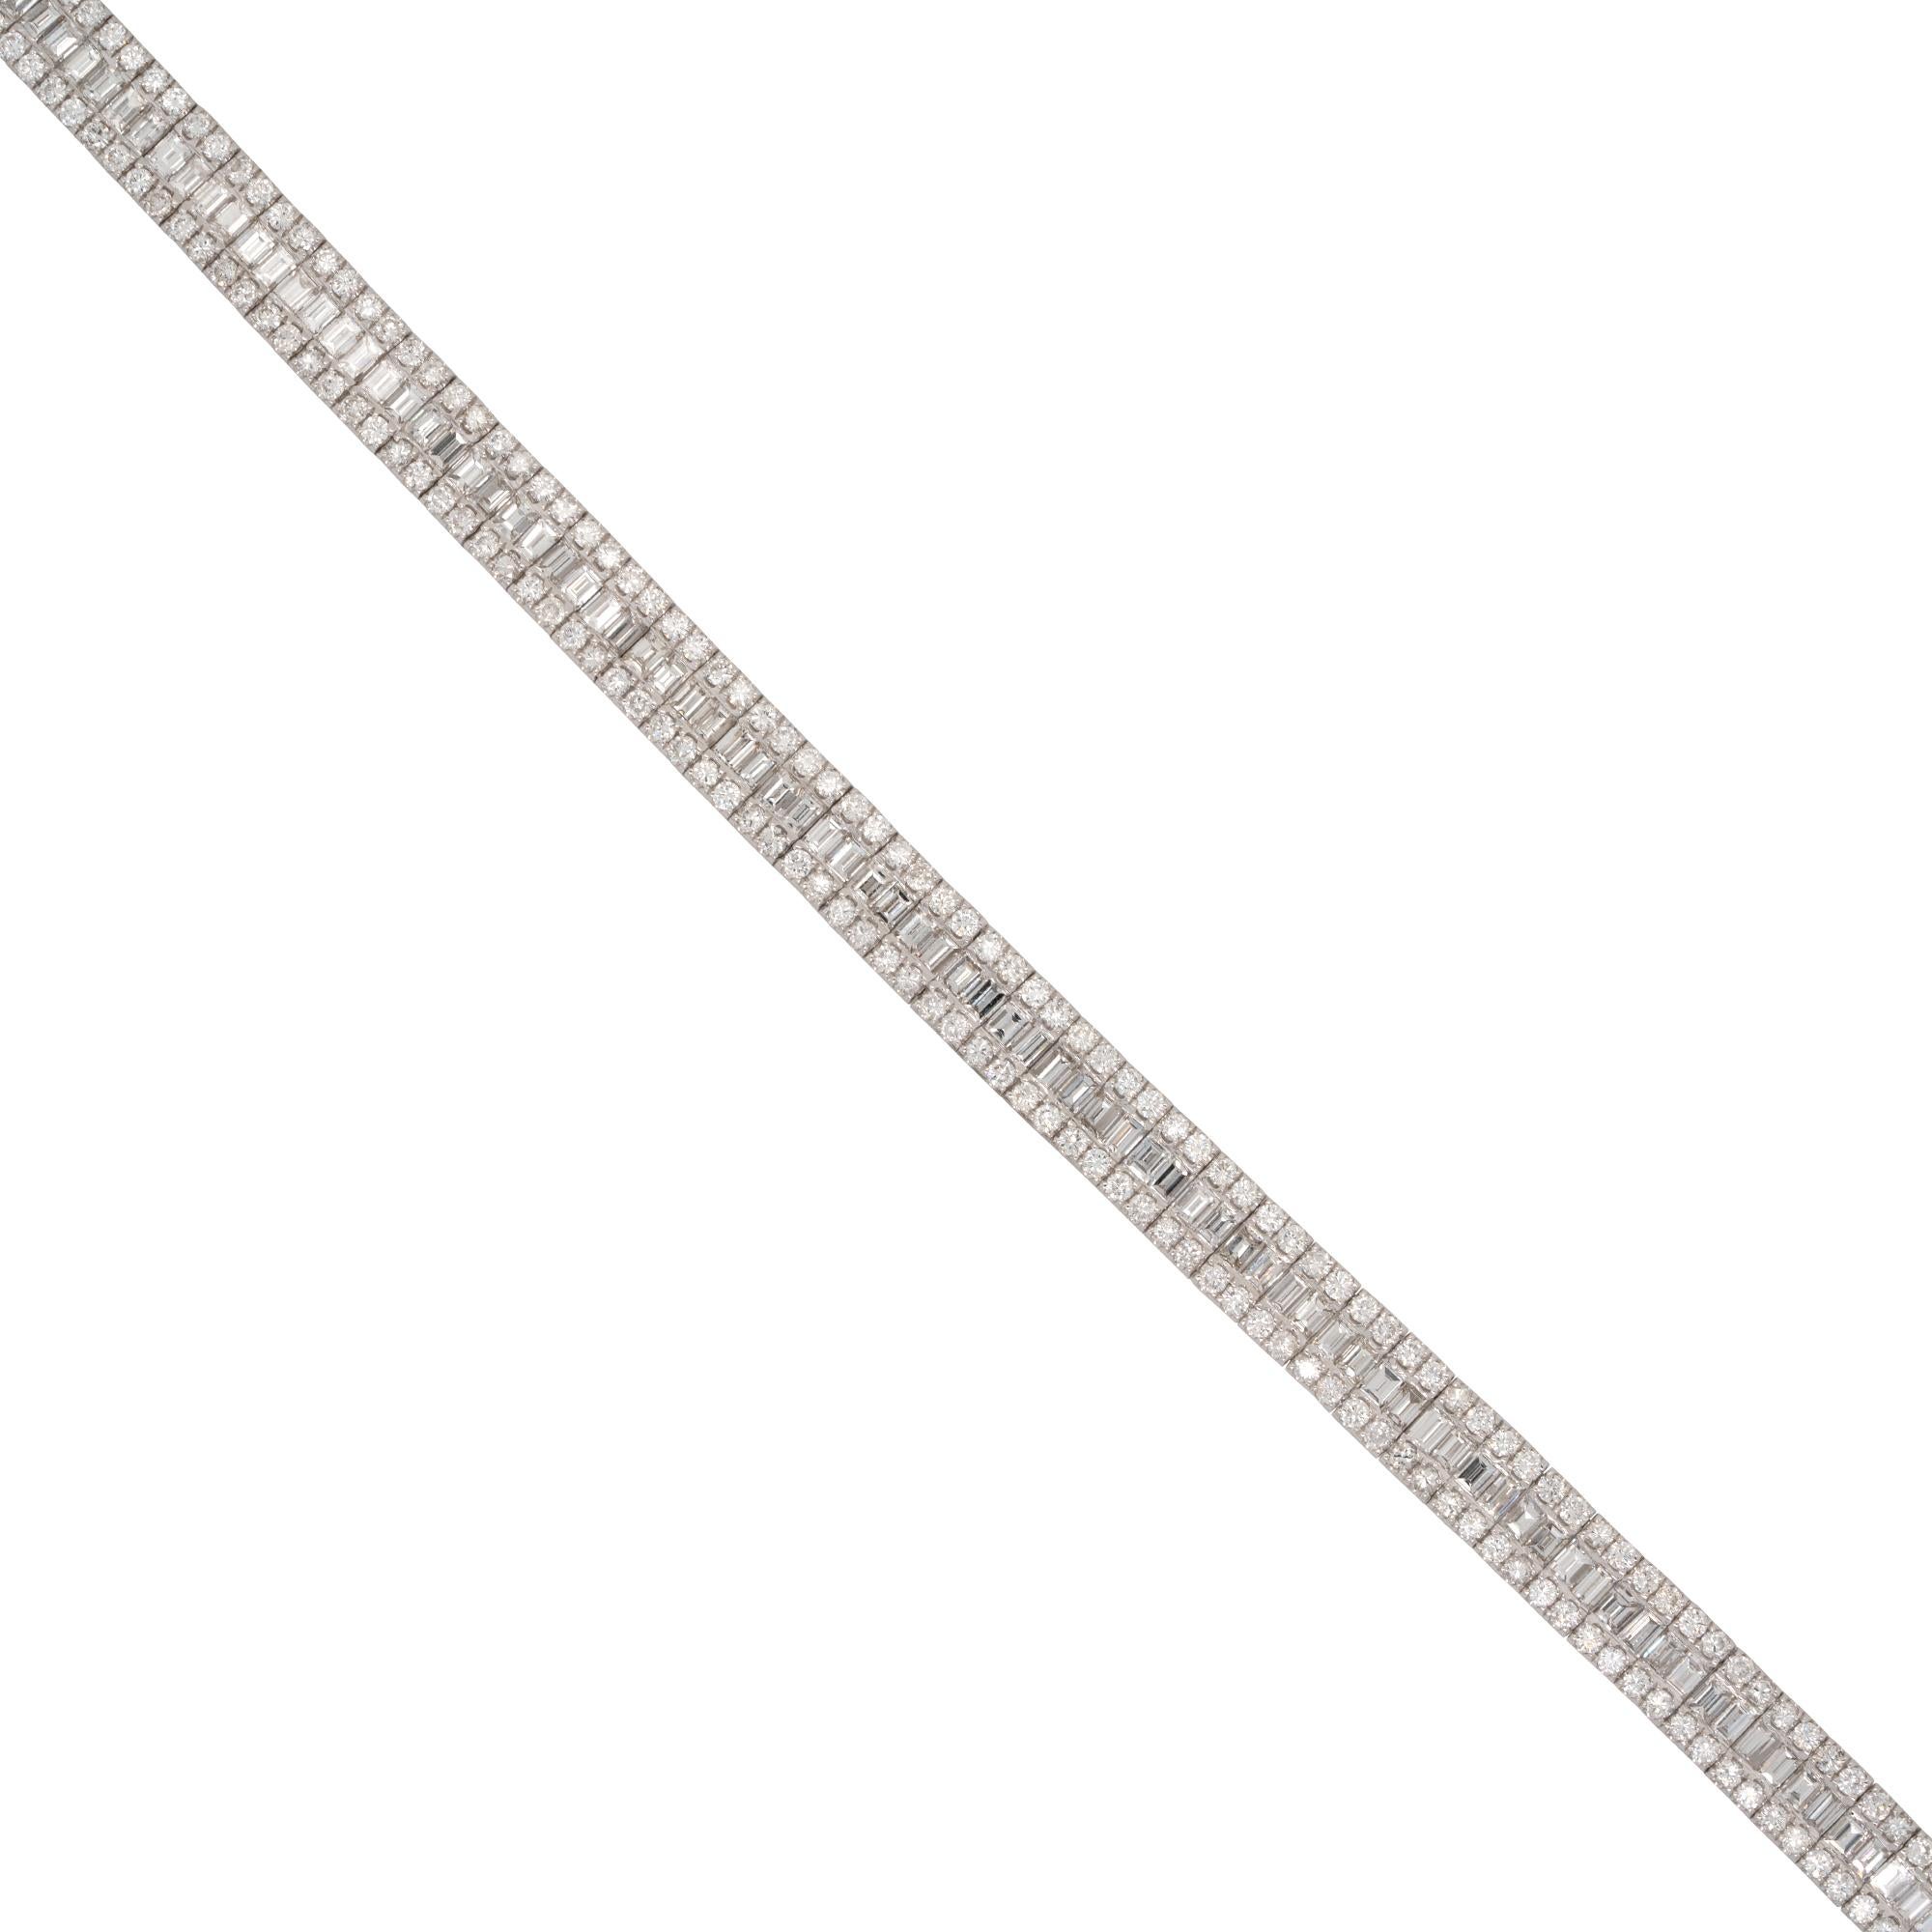 MATERIAL: 18k Weißgold
Diamant-Details: Ca. 8,11ctw von runden und Baguetteschliff Diamanten. Die Diamanten haben eine Farbe von G/H und eine Reinheit von VS.
Abmessungen: 7